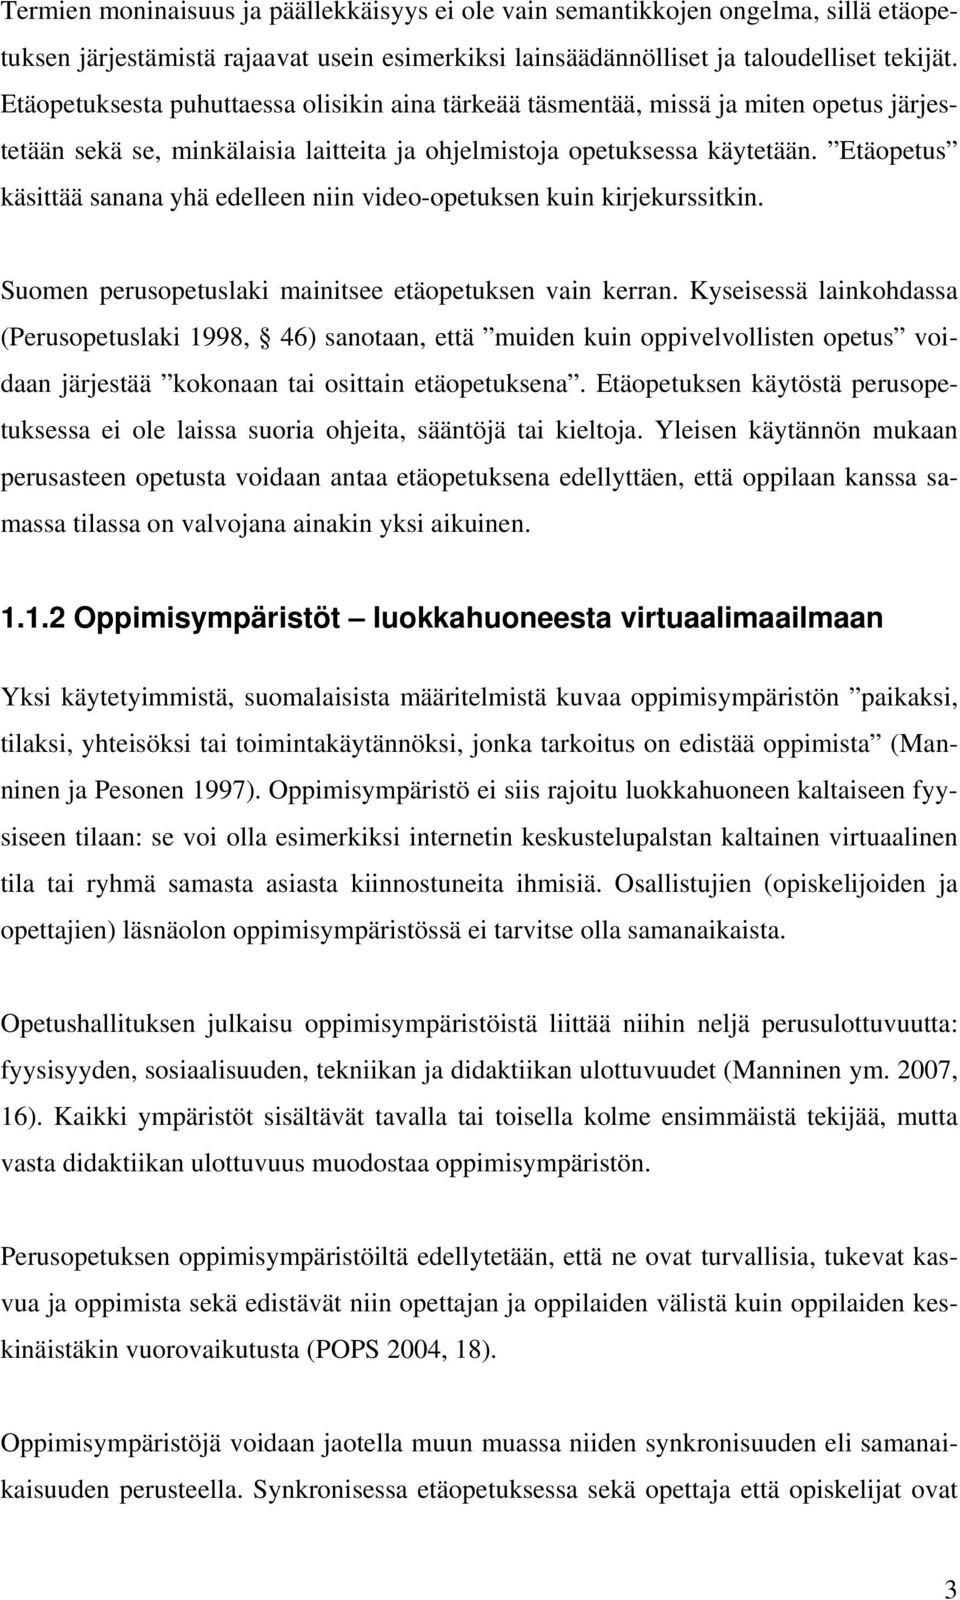 Etäopetus käsittää sanana yhä edelleen niin video-opetuksen kuin kirjekurssitkin. Suomen perusopetuslaki mainitsee etäopetuksen vain kerran.